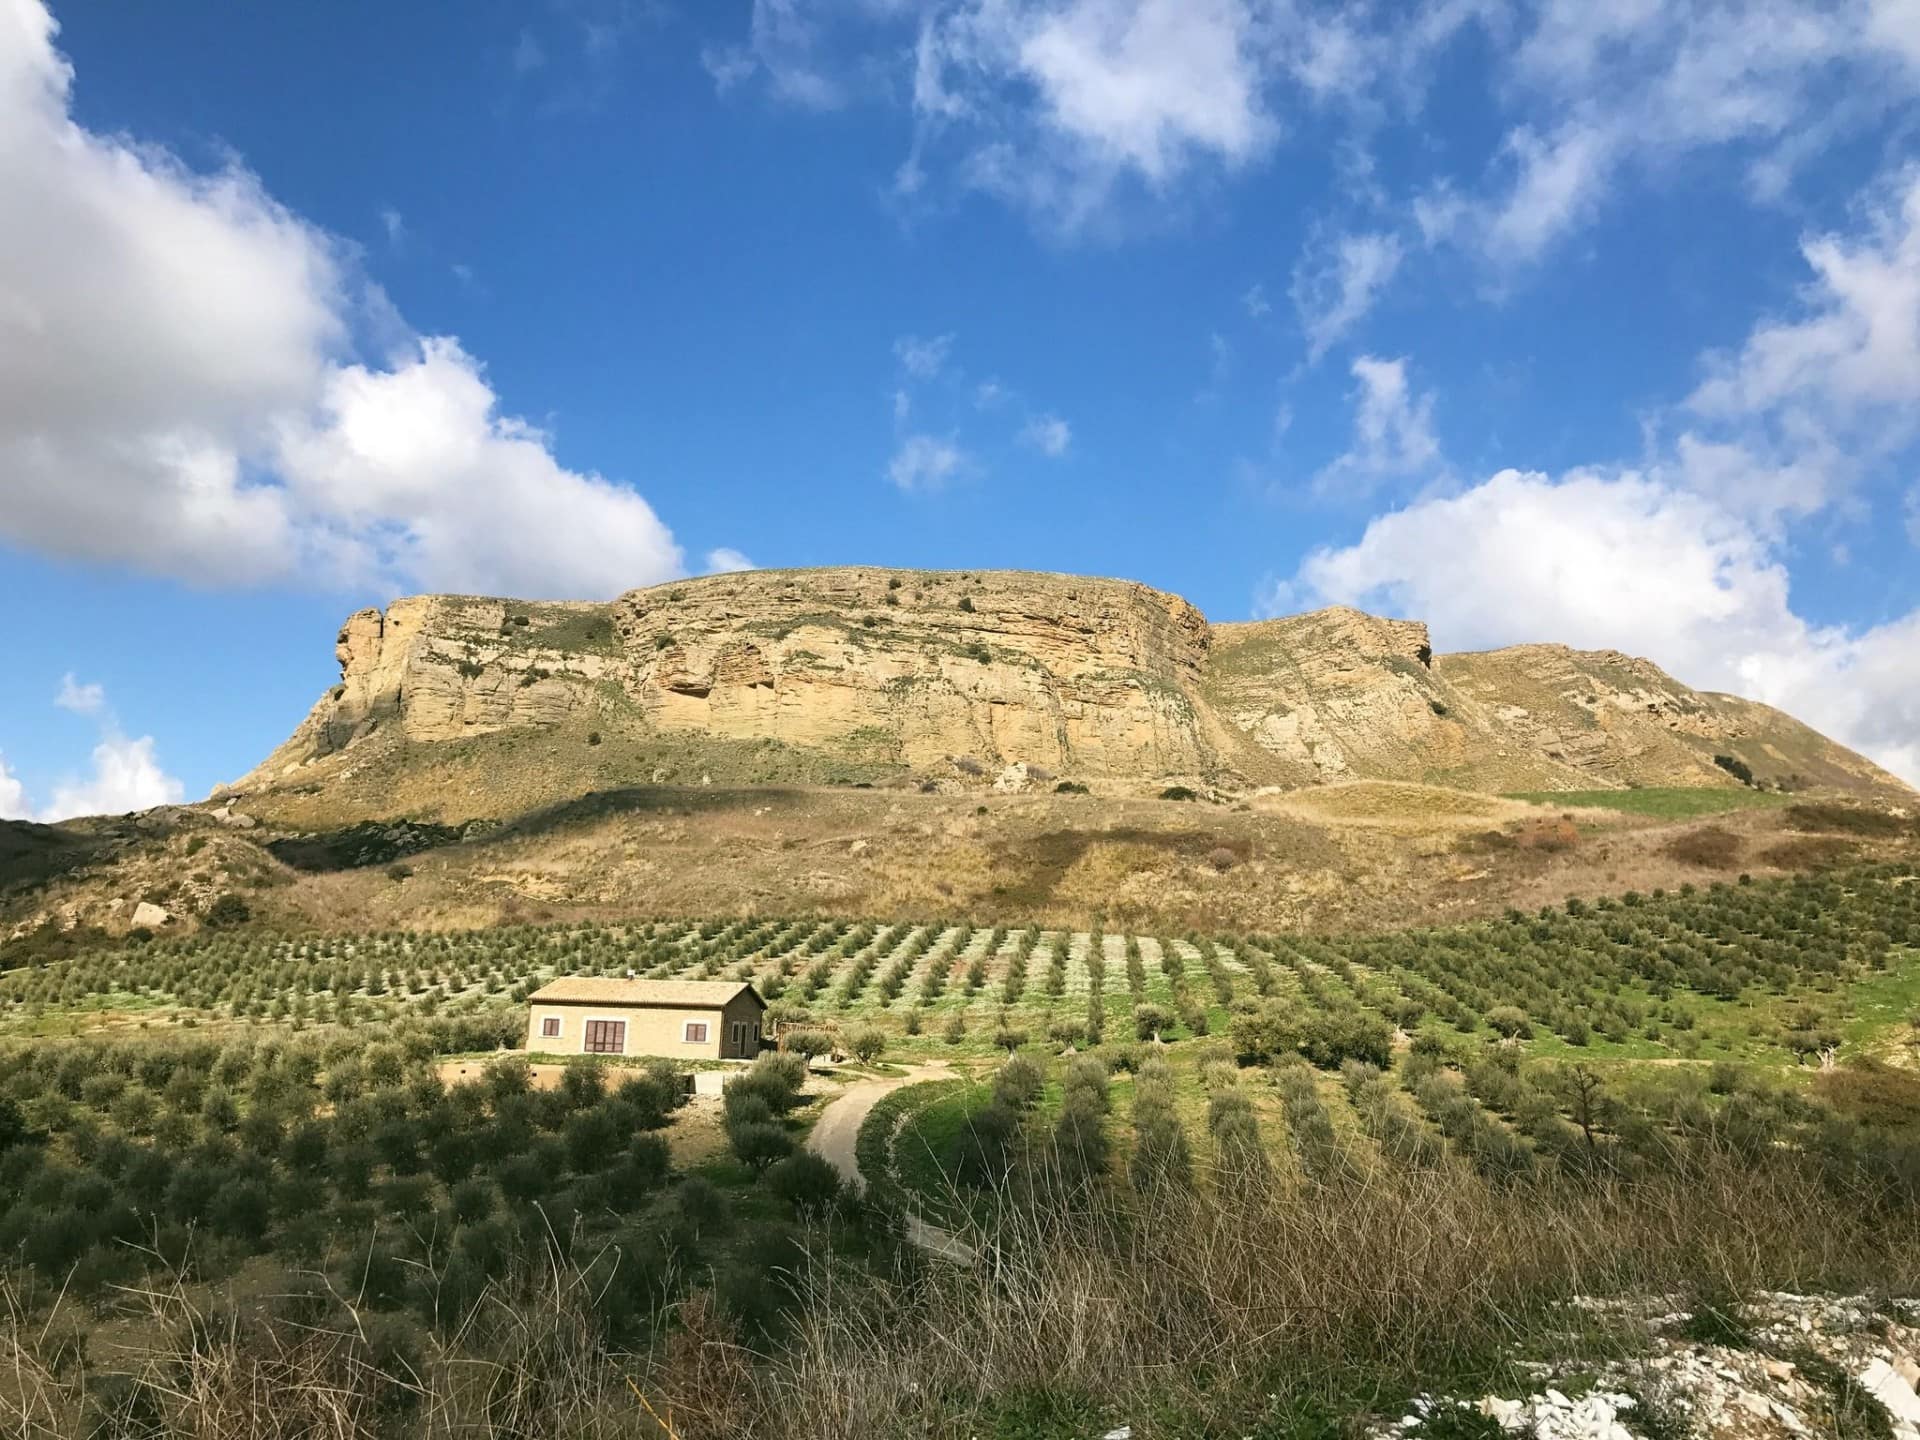 europa-die-besten-olivenoele-wettbewerbe-produktion-sizilianische-und-sardische-erzeuger-triumph-im-weltweiten-wettbewerb-olivenoel-zeiten